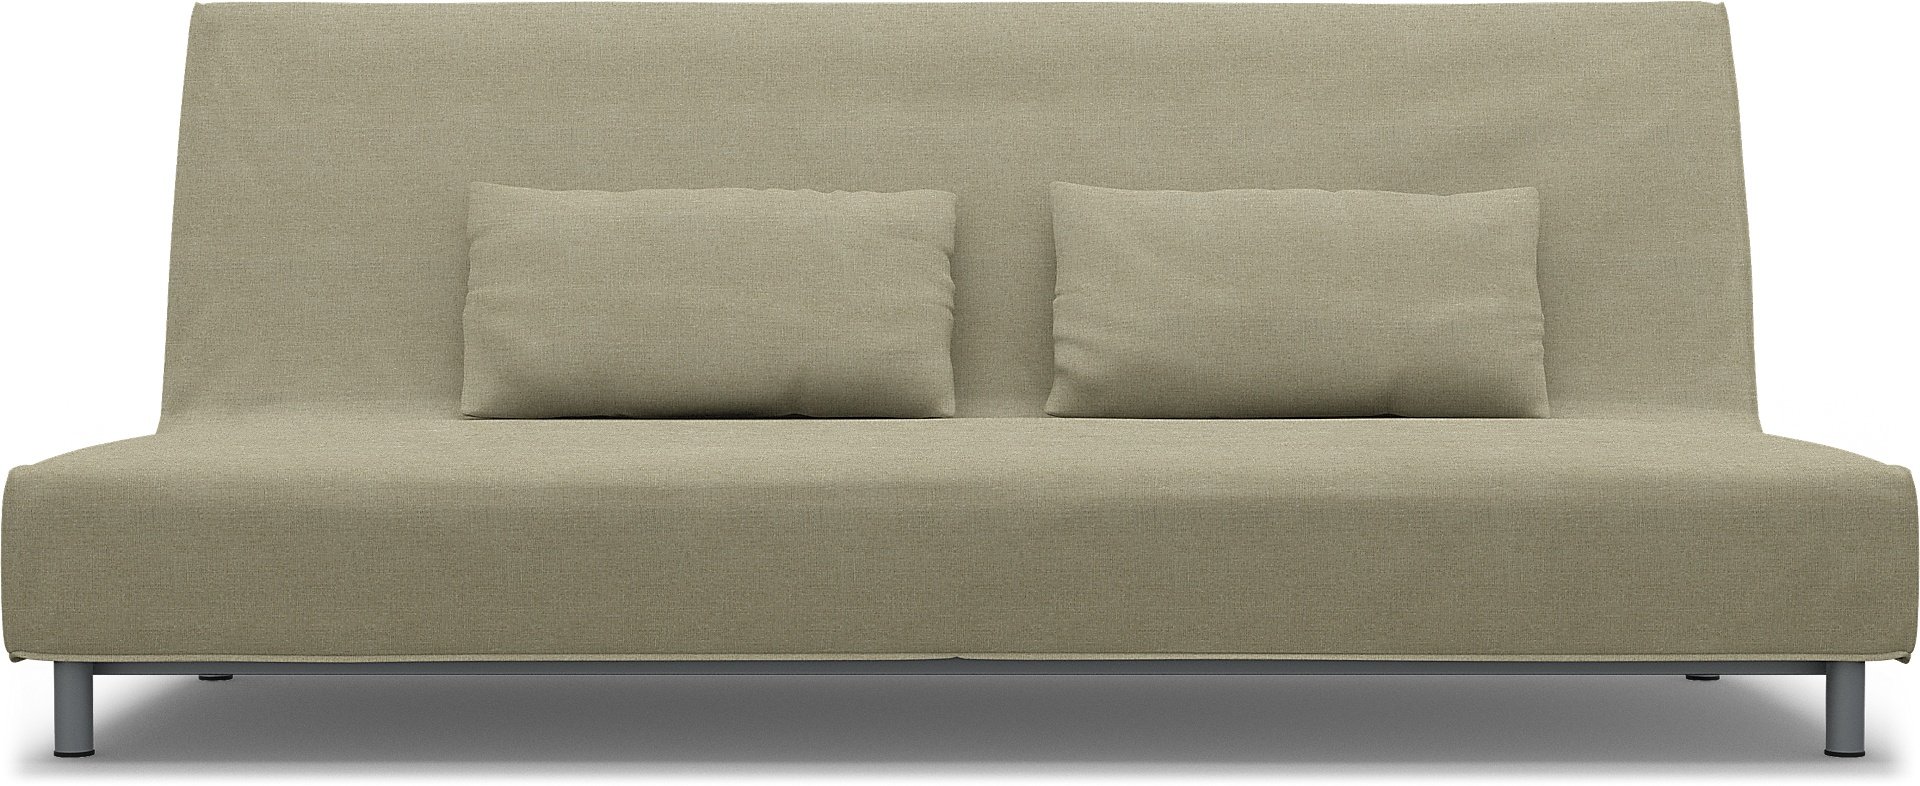 IKEA - Beddinge Sofa Bed Cover, Pebble, Linen - Bemz